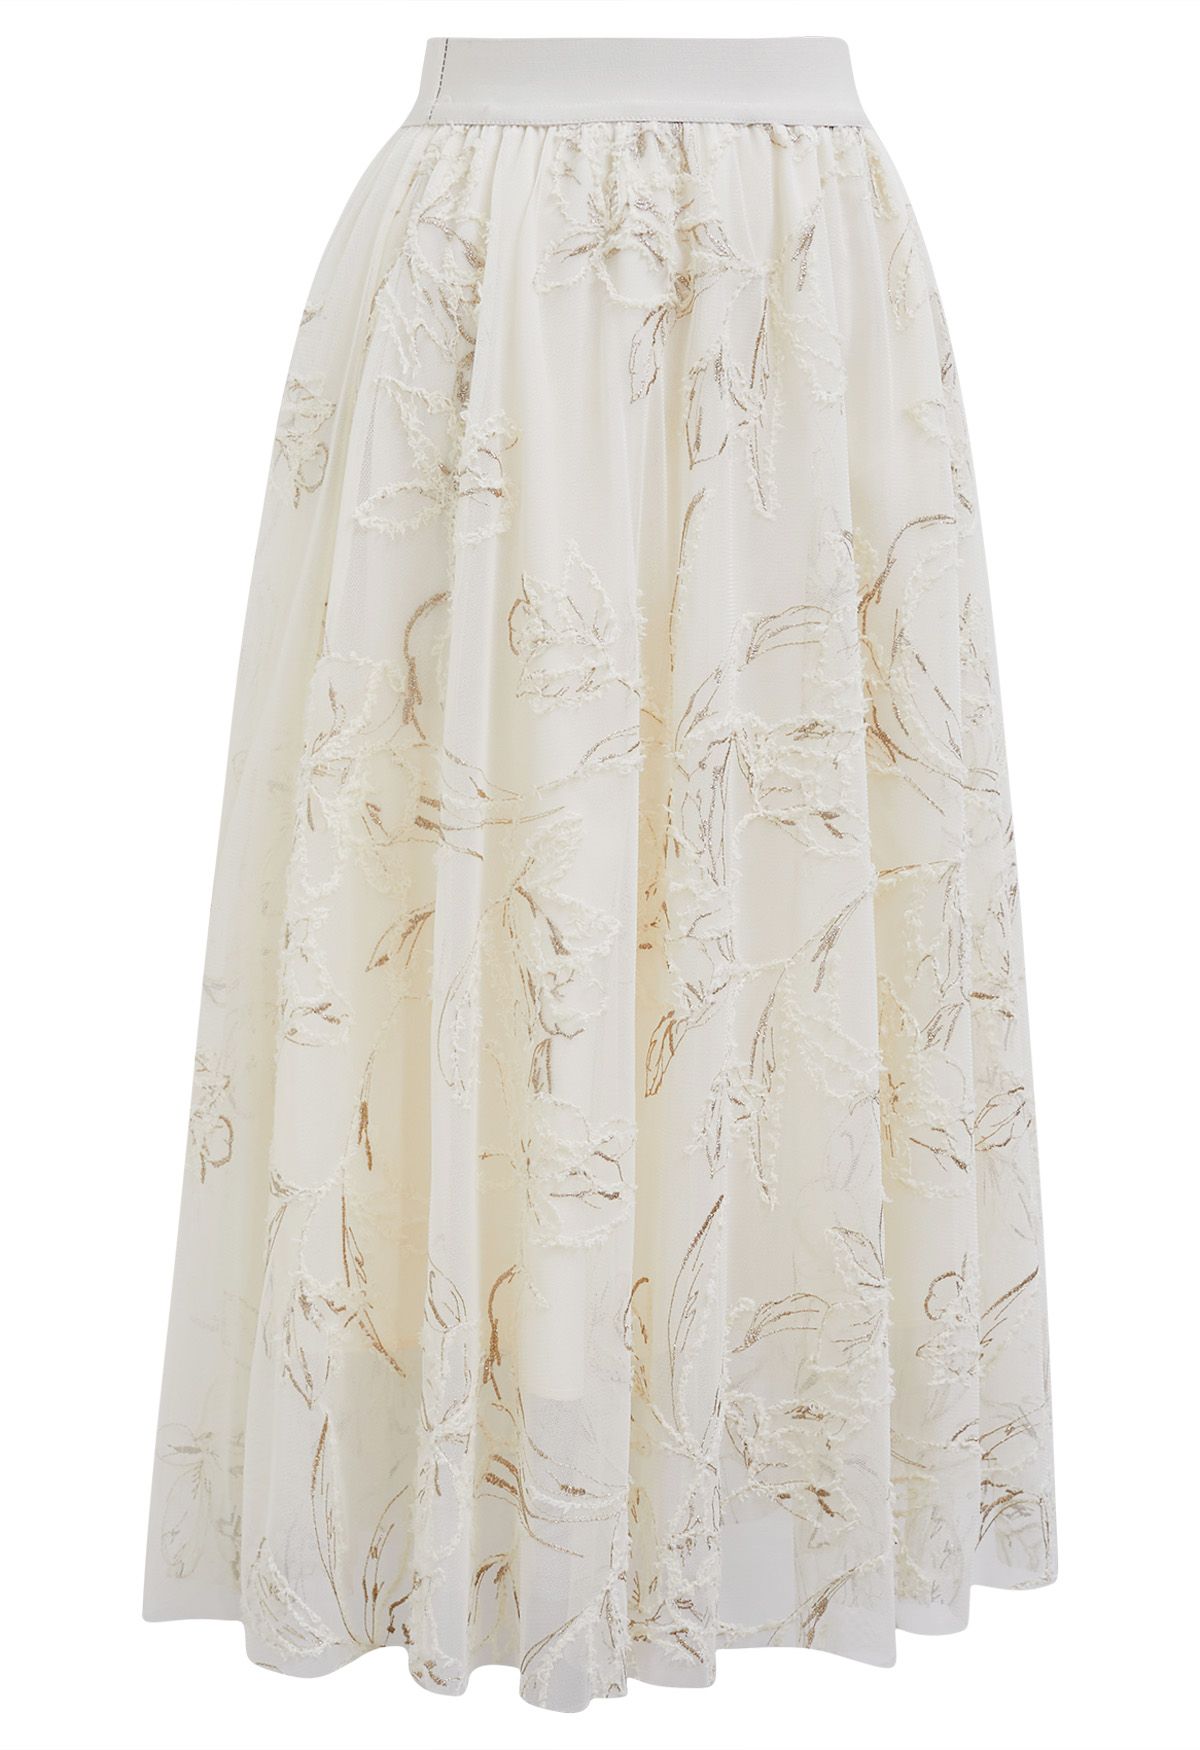 Falda midi de malla floral borrosa con hilo metálico en color crema